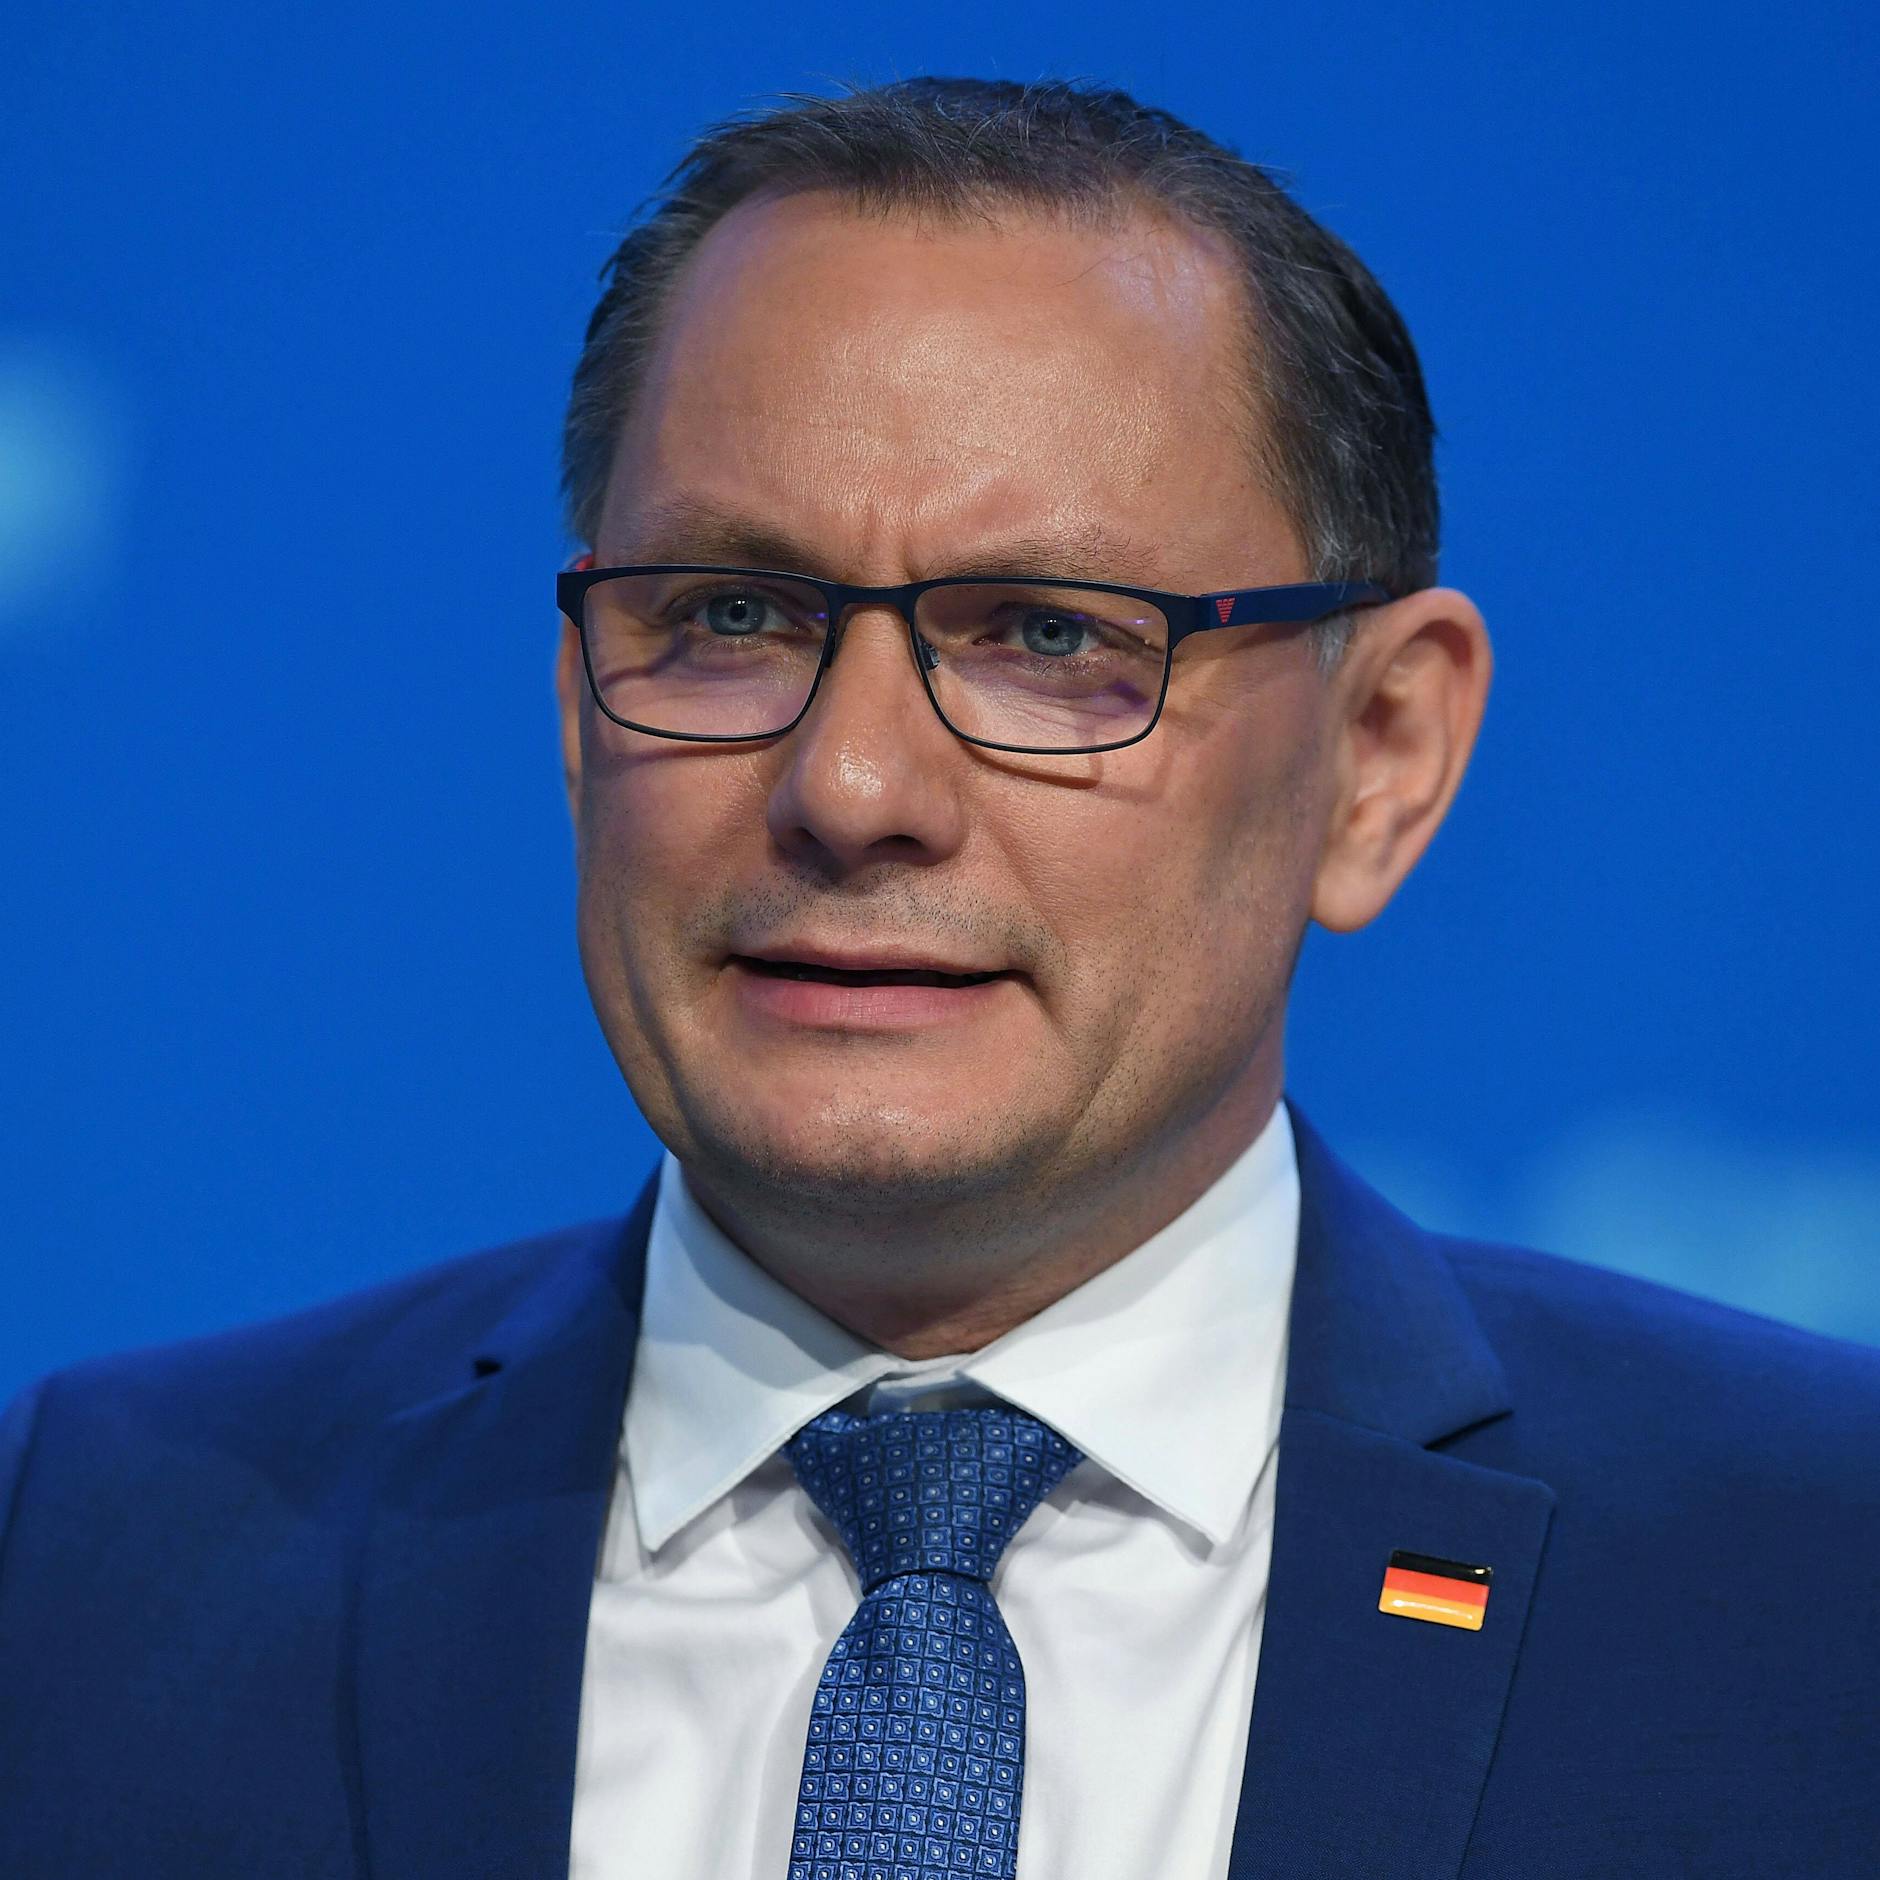 Image - Machtkampf in Sachsen: AfD wählt neue Parteispitze